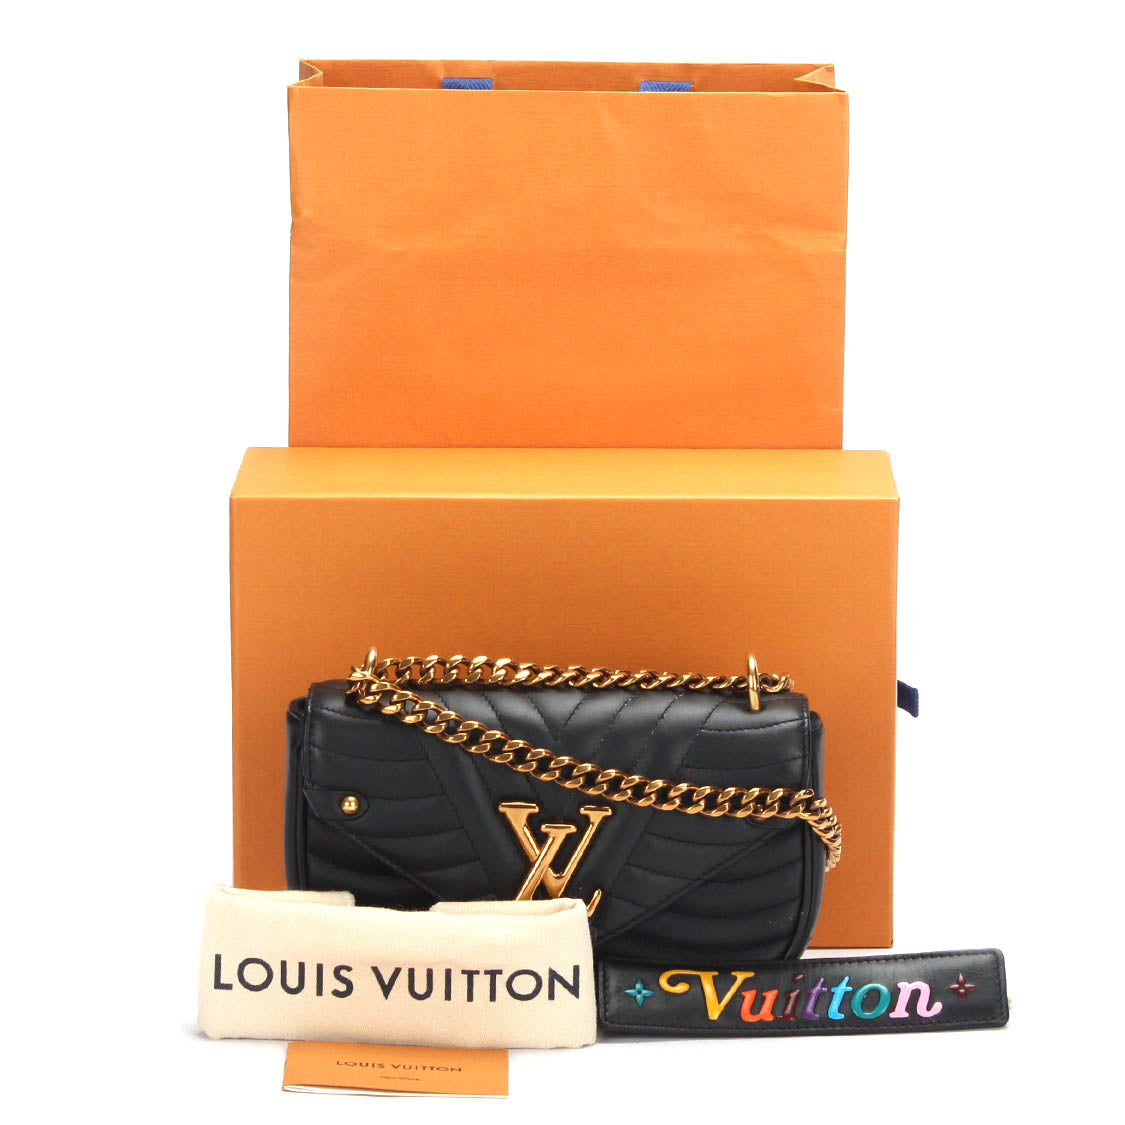 LOUIS VUITTON M51683 Shoulder Bag New wave chain bag Leather